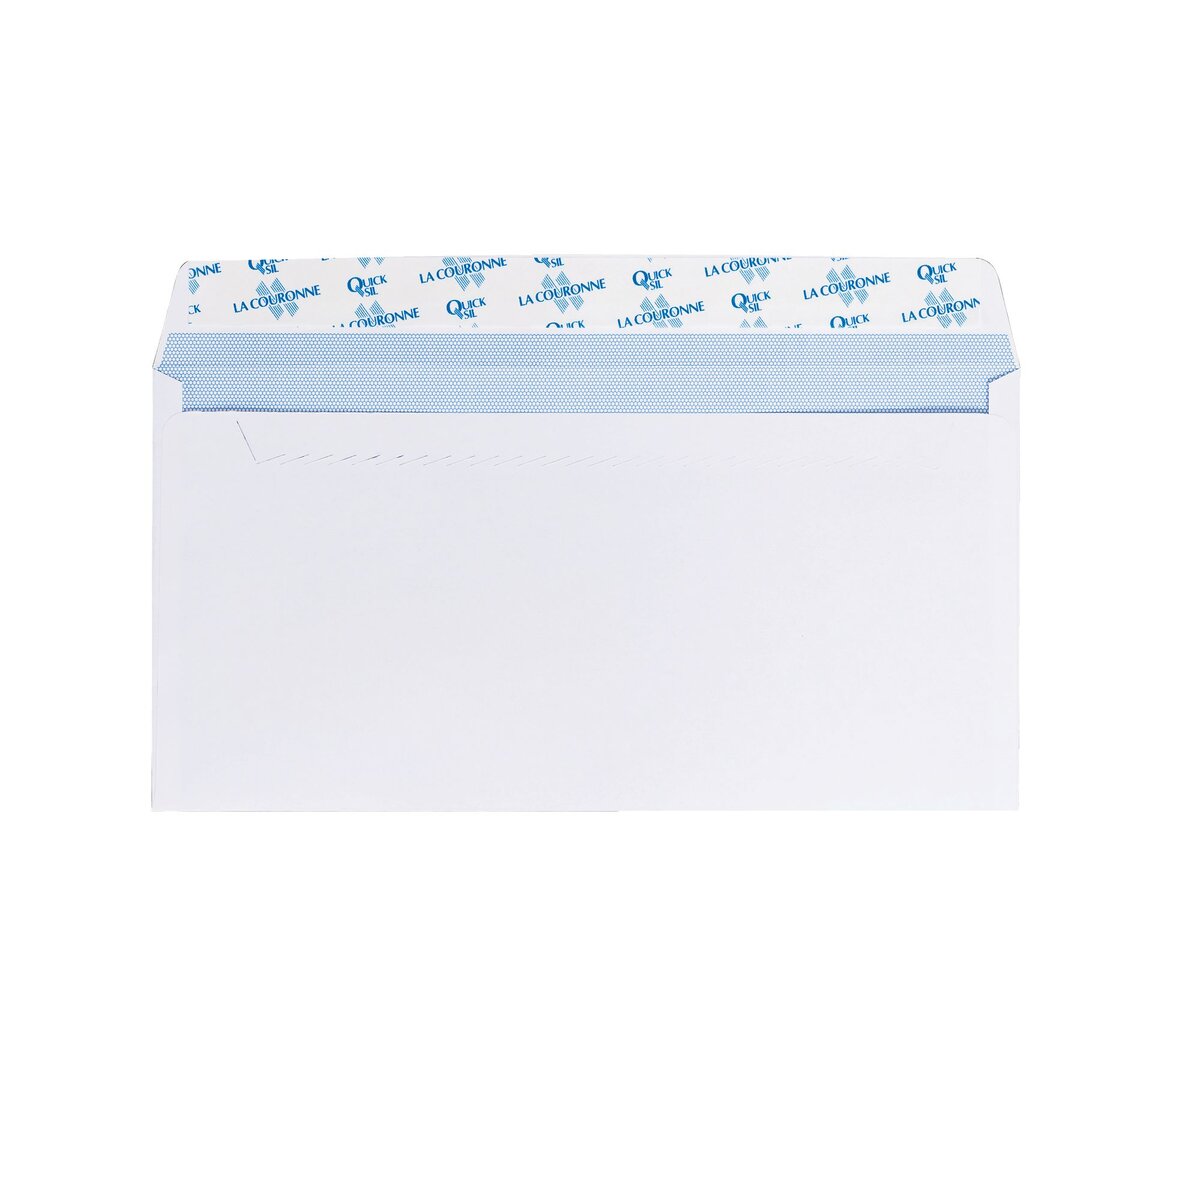 Enveloppe blanche Raja DL - 110 x 220 mm - 80g avec fenêtre - autocollante  - boîte 500 unités pas cher